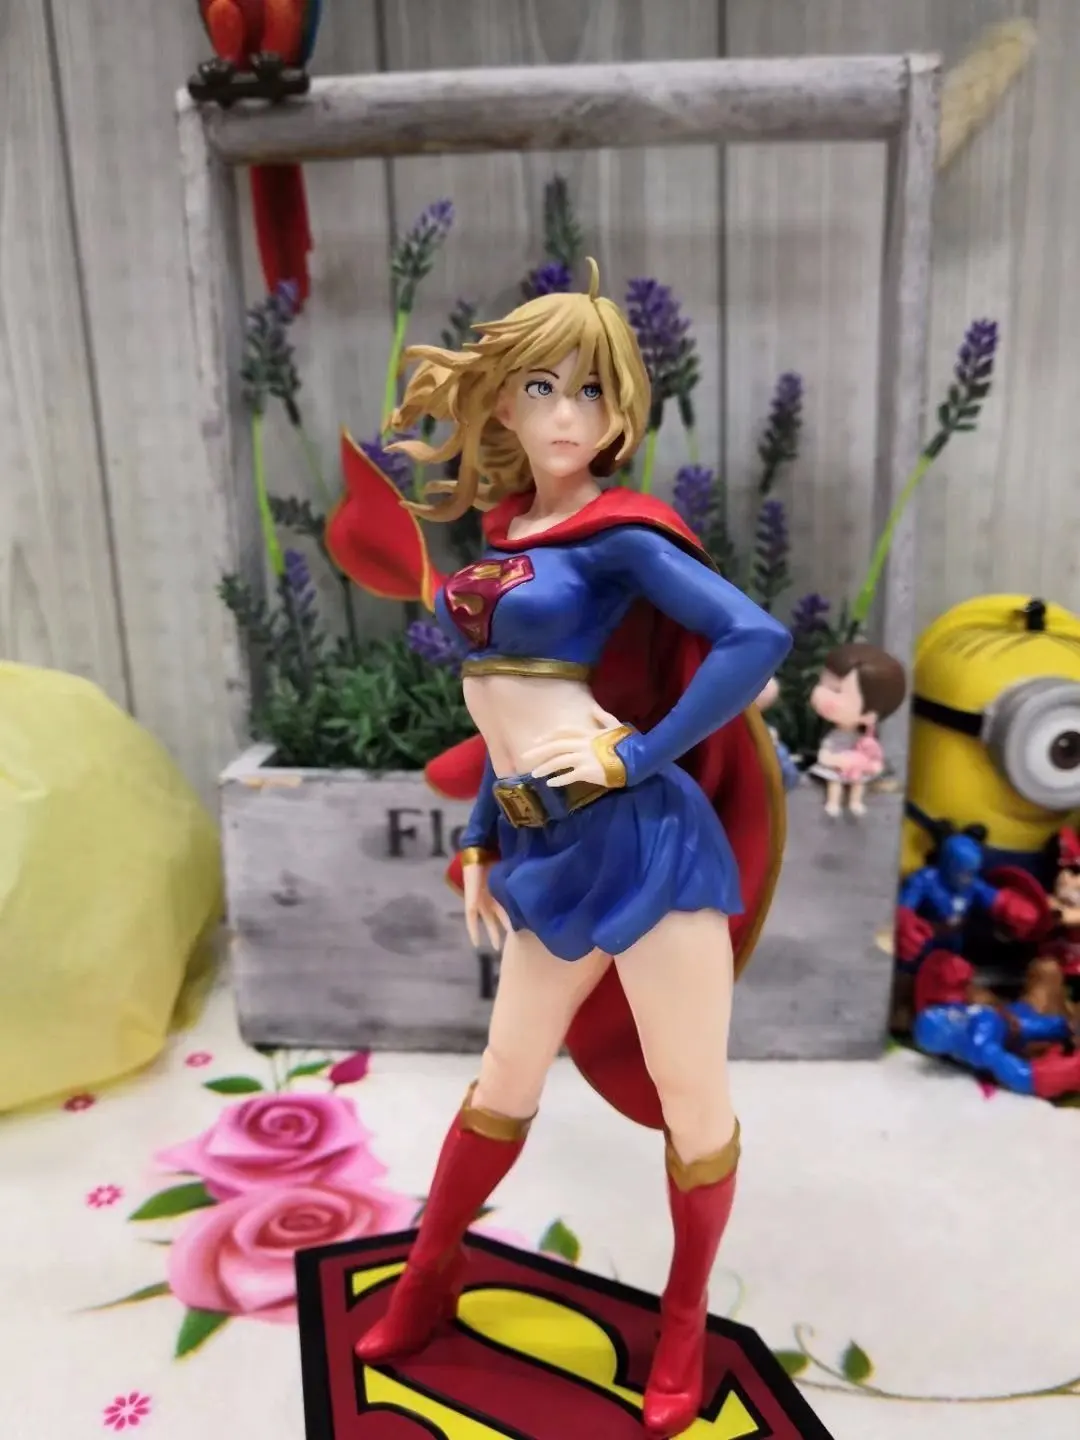 Статуята на Bishoujo връща фигурата на Supergirl колекционерска играчка